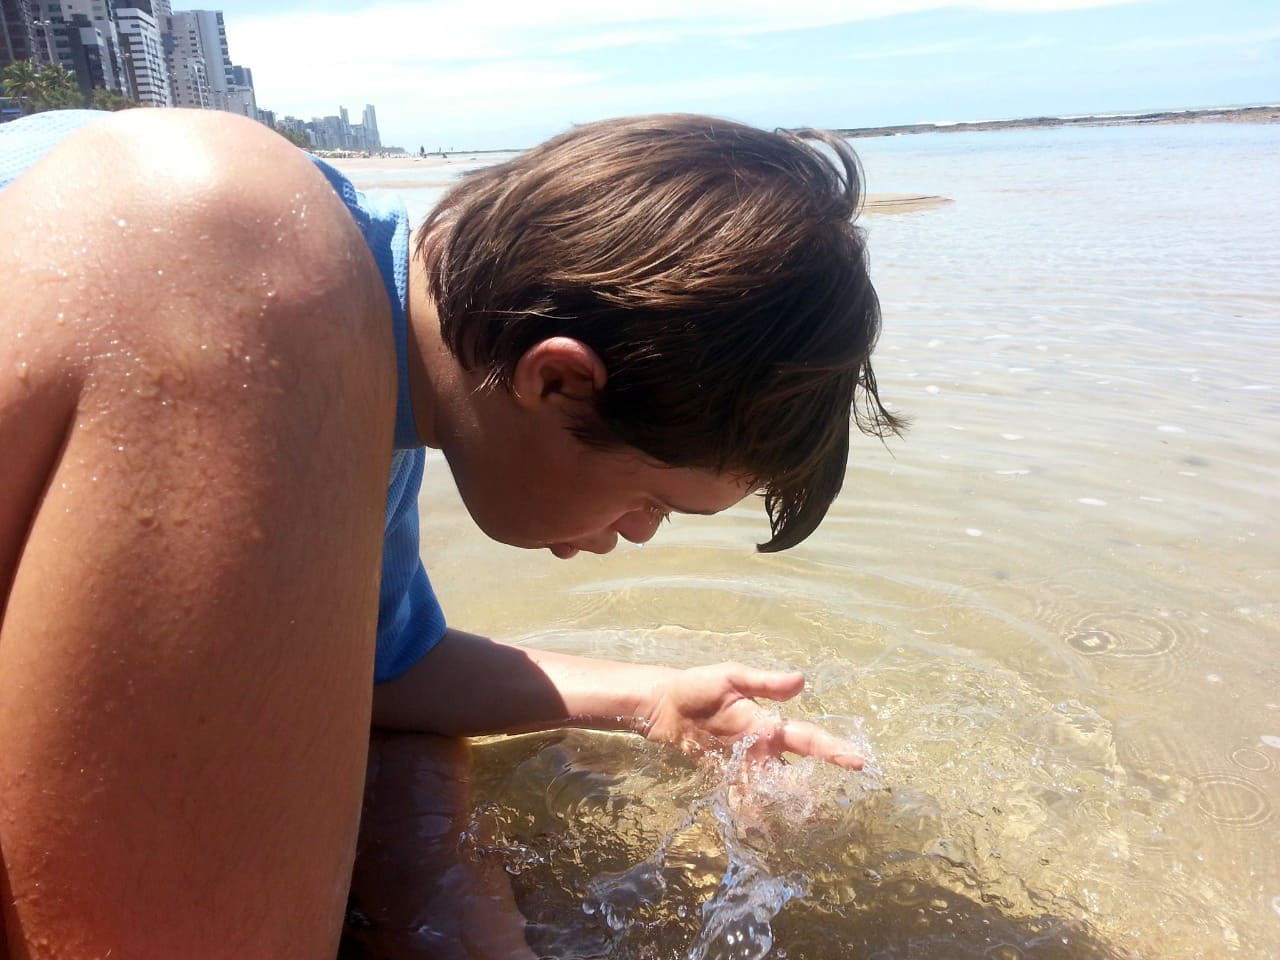 Augusto, que vive o lado b do autismo com síndrome de down, brincando com a água do mar.